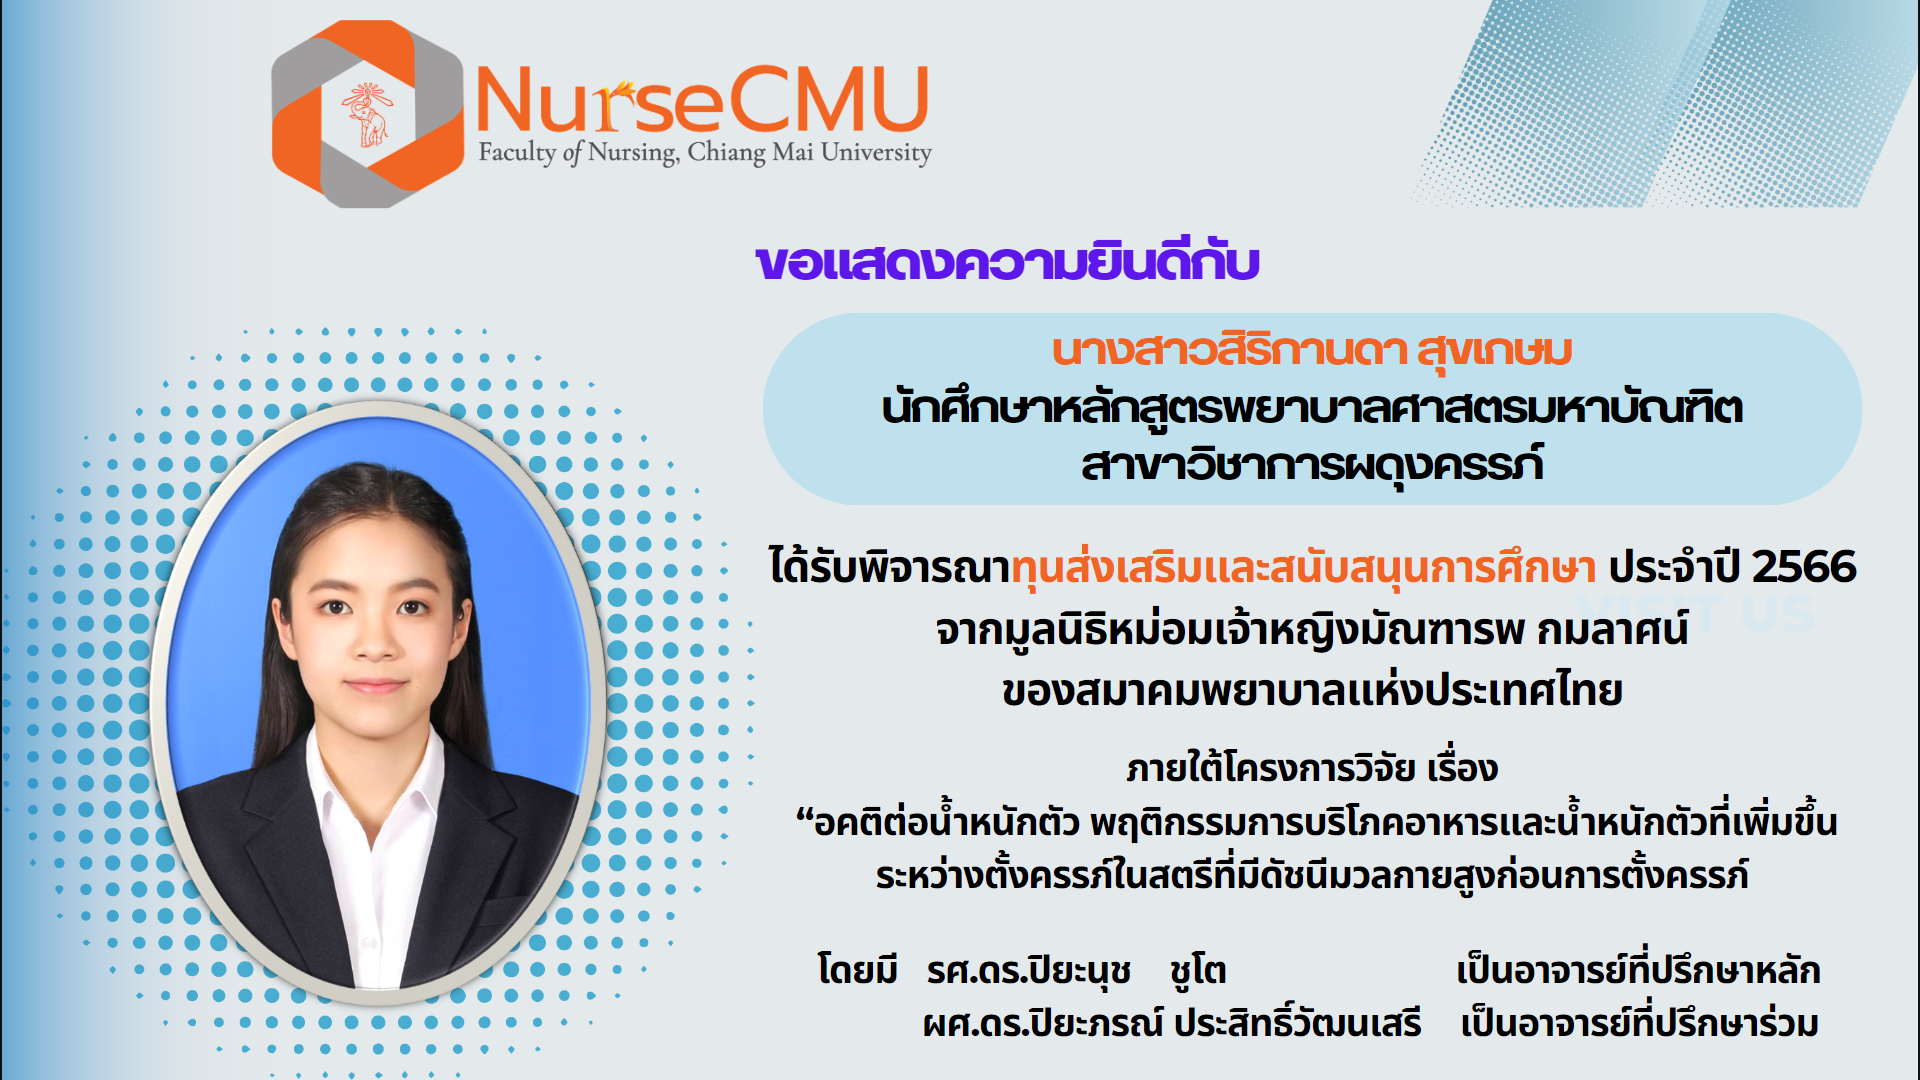 
	นศ.ป.โท พยาบาล มช.ได้รับทุนการศึกษาจากมูลนิธิหม่อมเจ้าหญิงมัณฑารพ กมลาศน์ สมาคมพยาบาลแห่งประเทศไทยฯ
